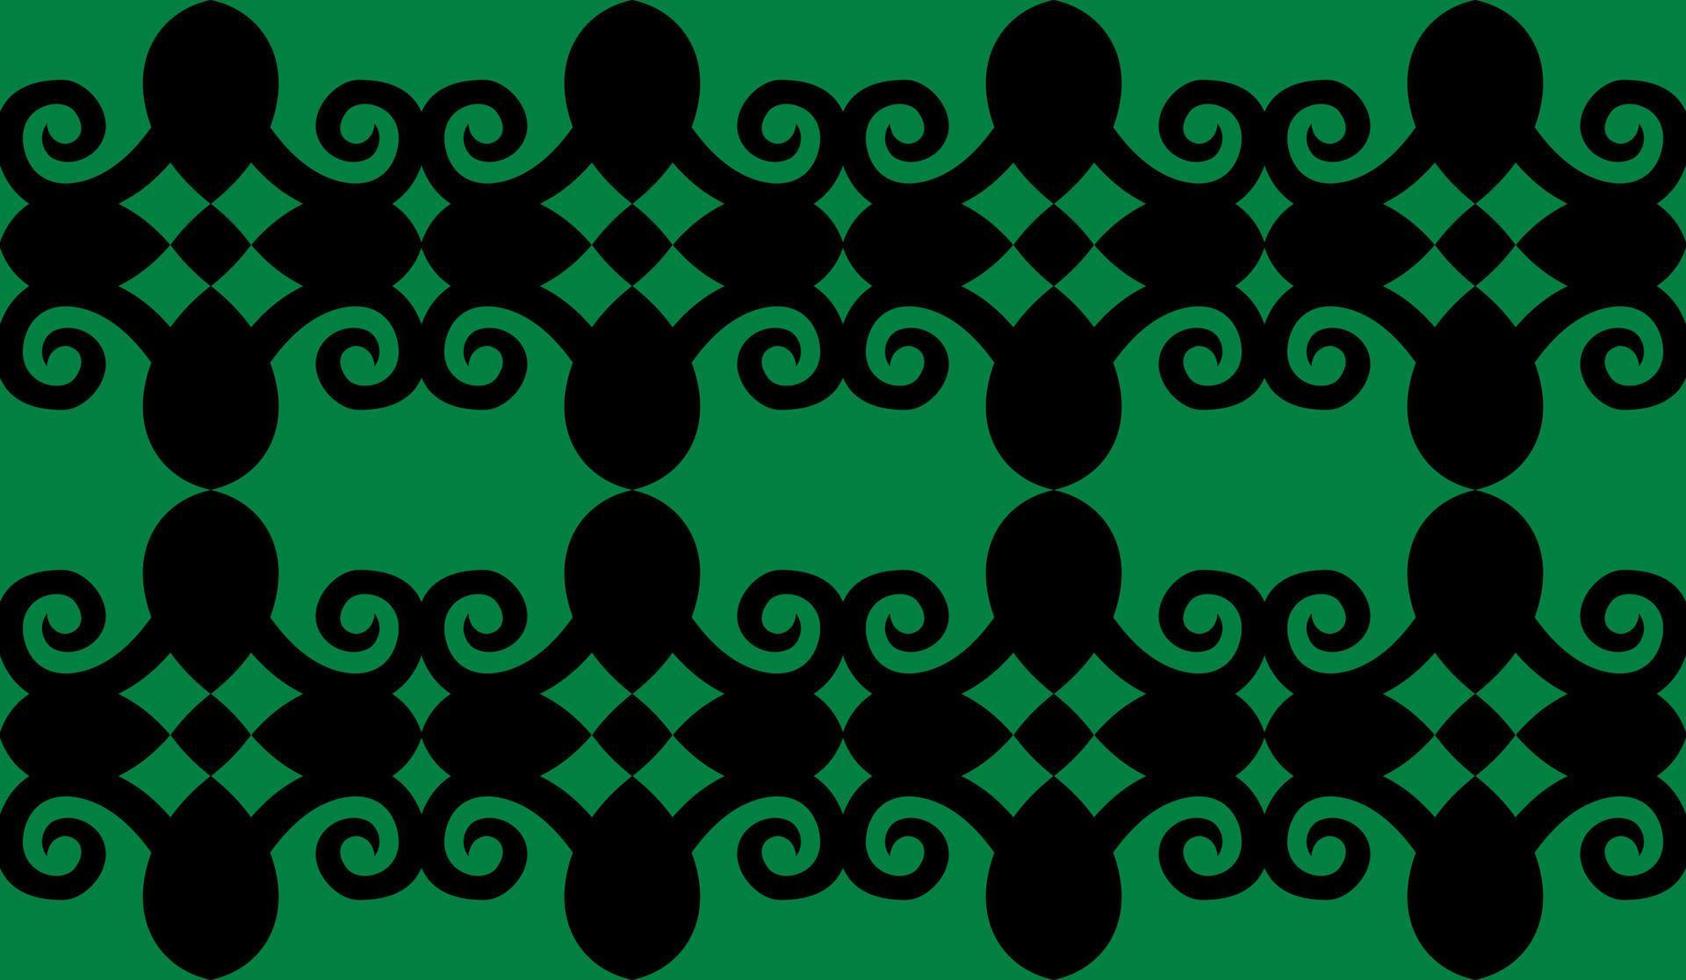 patern senza cuciture di dayak etnico pattern.traditional tessuto indonesiano motivo.borneo pattern. ispirazione per il design vettoriale. tessuto creativo per moda o stoffa vettore